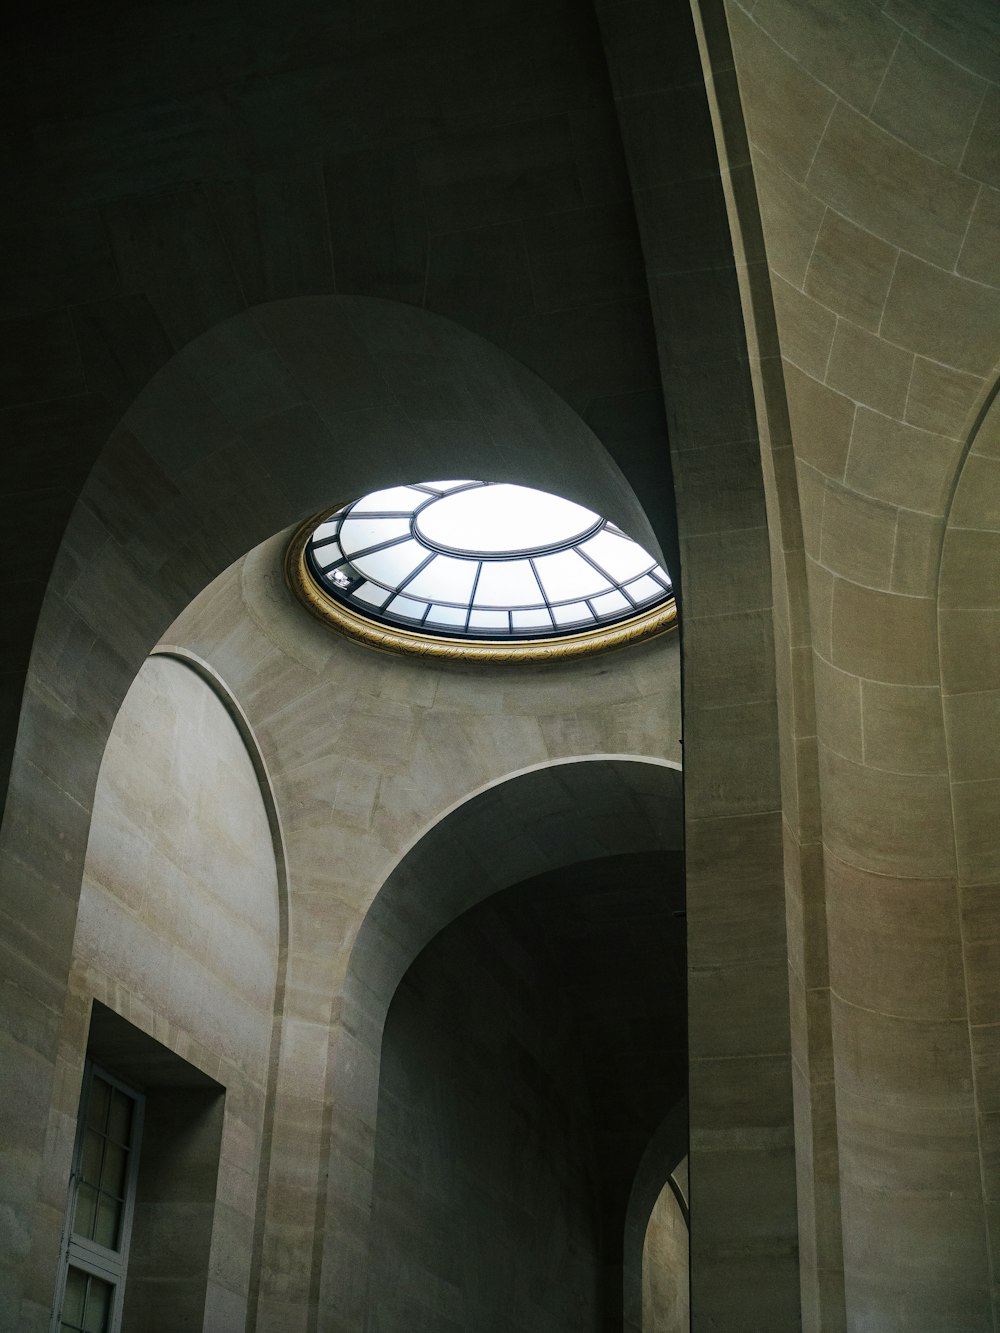 uma janela circular no meio de um edifício